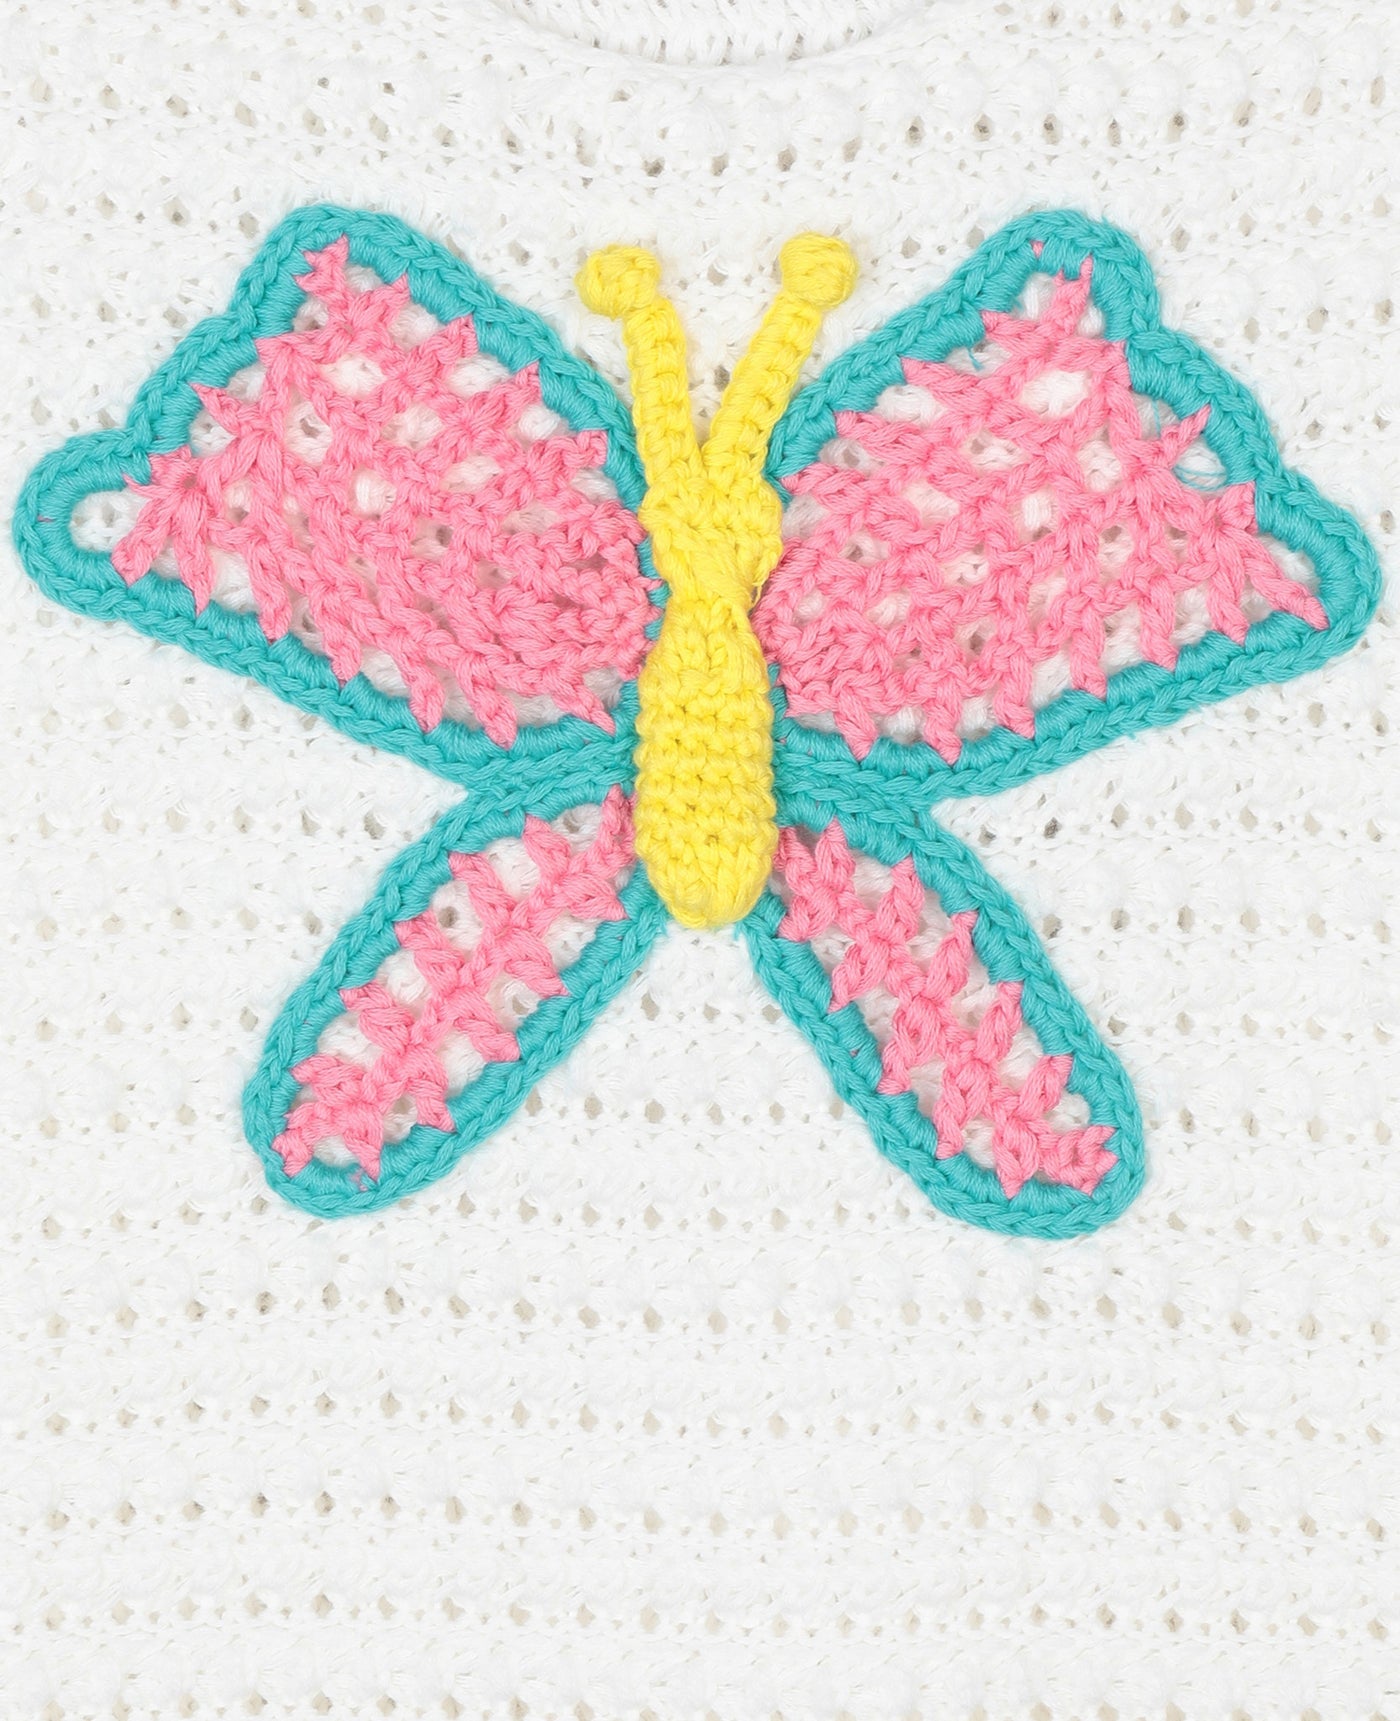 Stella McCartney Kids - Butterfly Crochet Cotton Top